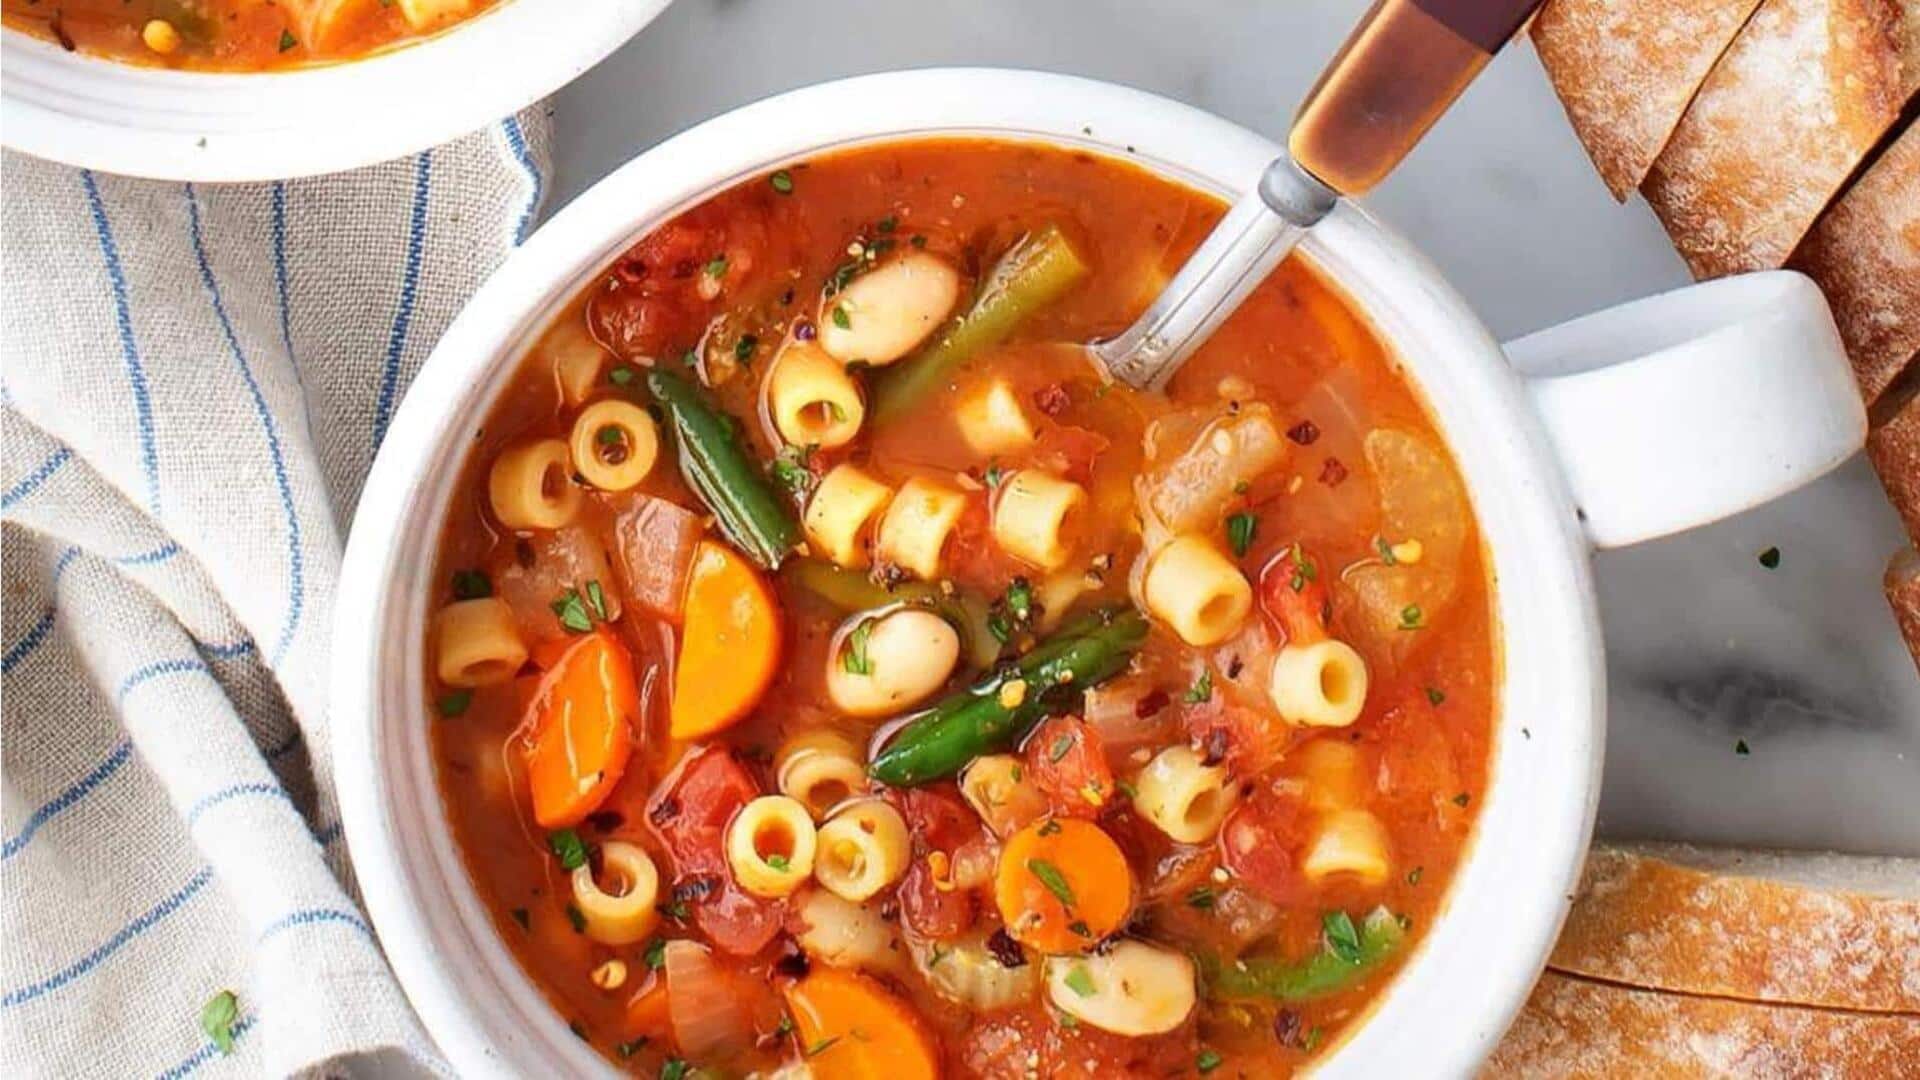 Coba resep sup minestrone ini untuk hari yang menyegarkan